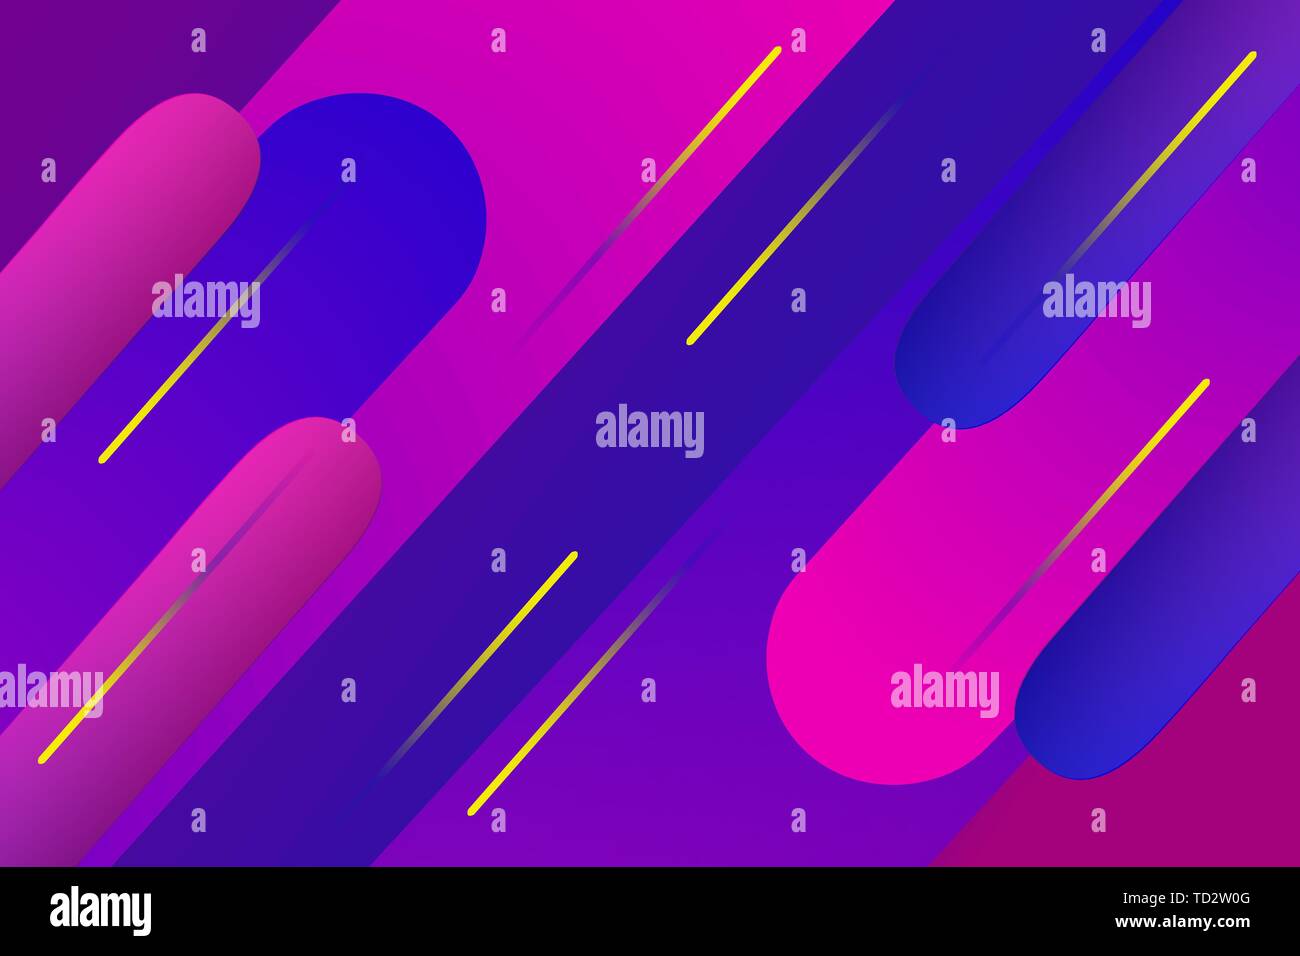 Abstrakte leuchtend bunten Hintergrund mit geometrischen Formen auf blauen violetten Gradienten Hintergrund Stock Vektor